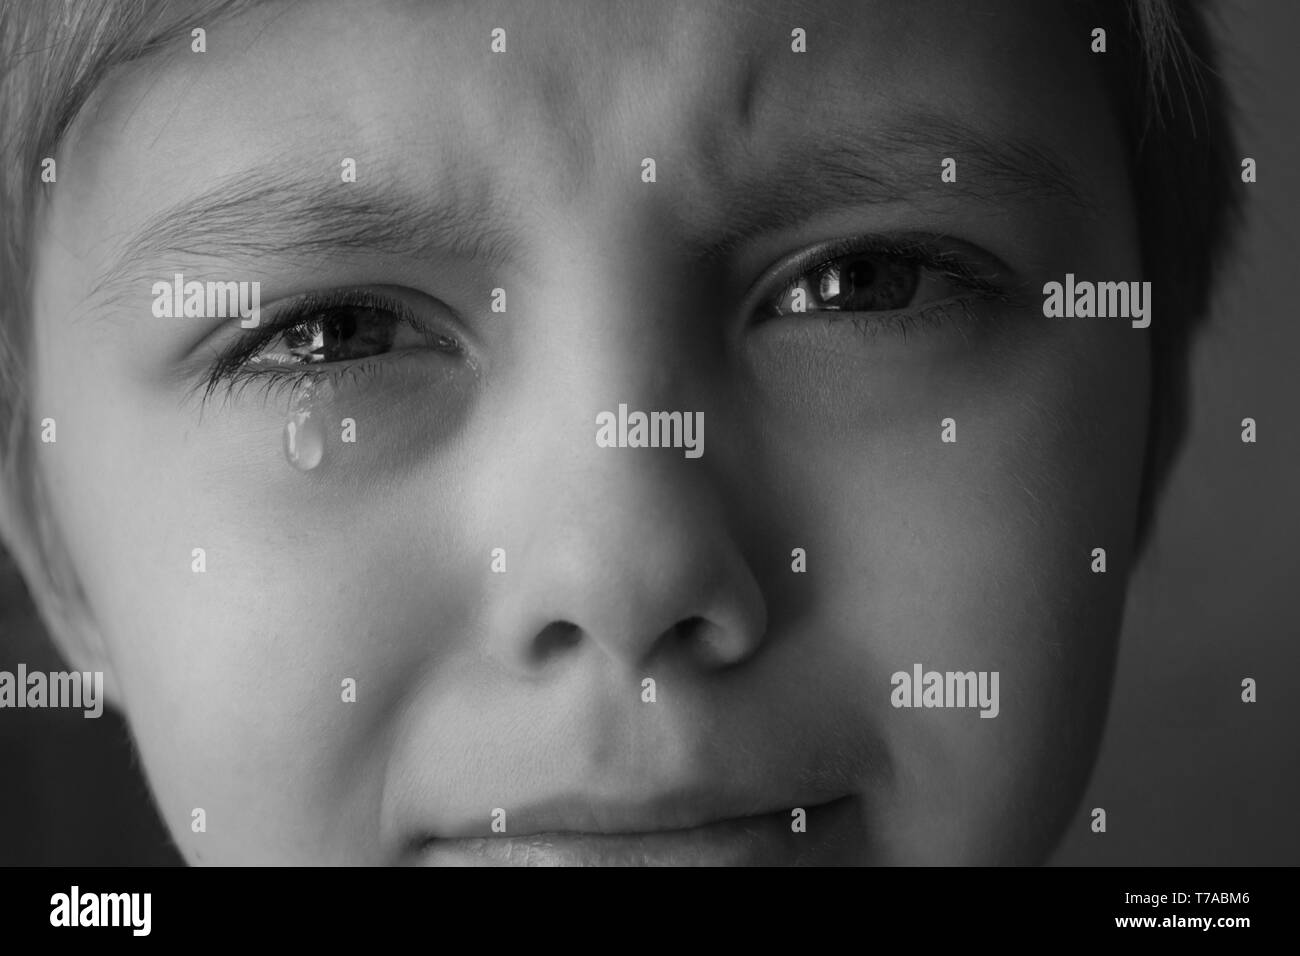 Des larmes dans les yeux d'un enfant. Une larme sur la joue du garçon. Close-up. Photo en noir et blanc. Banque D'Images